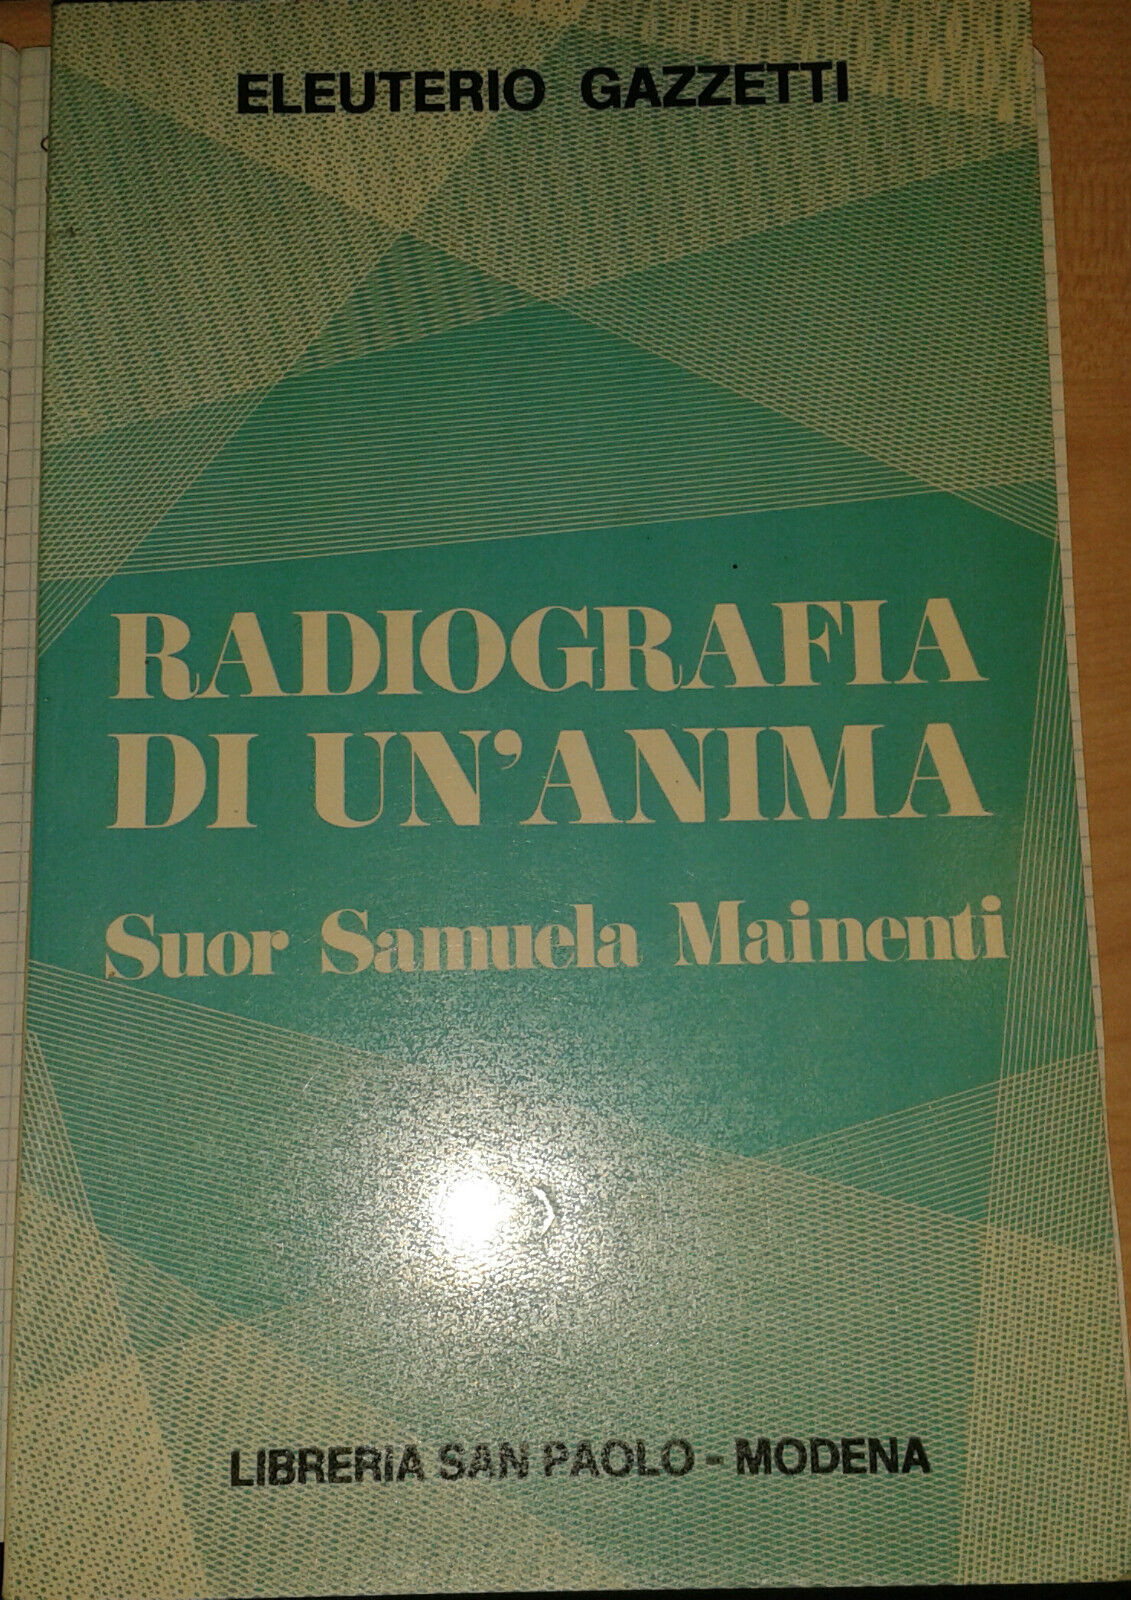 RADIOGRAFIA DI UN'ANIMA - Suor S. Mainenti - 1972 - Gazzetti - M